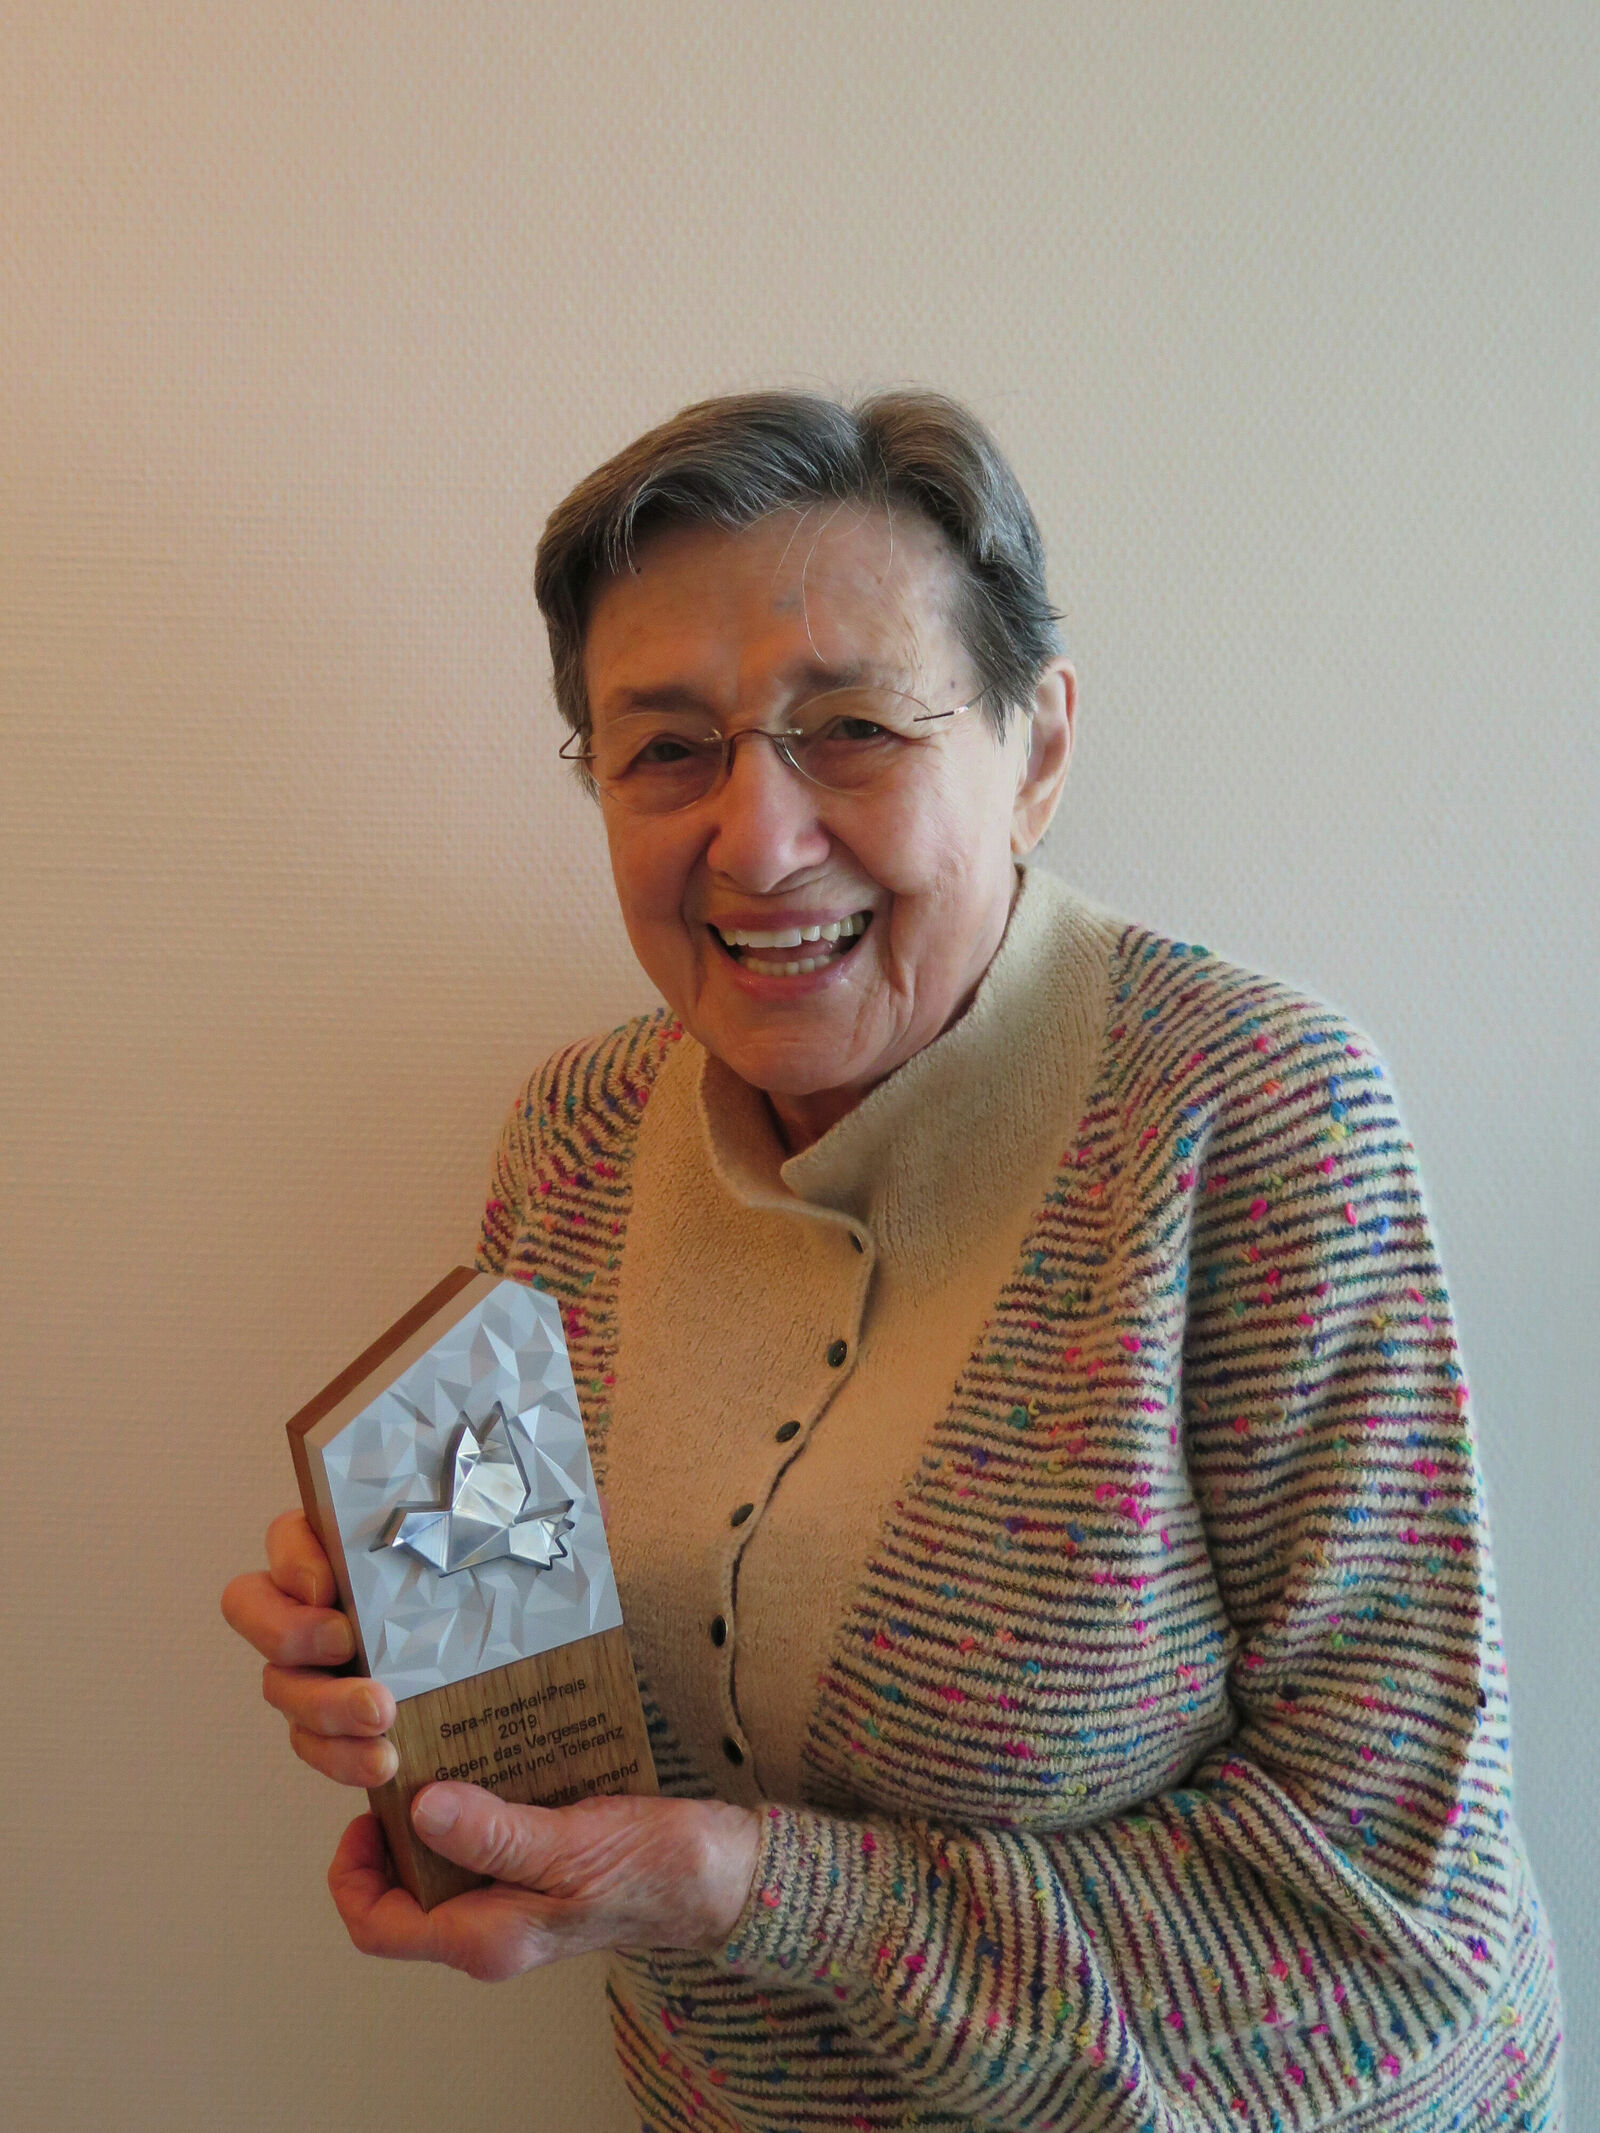 Sara-Frenkel-Preis: Namenspatronin Sara Frenkel-Bass (97) hält die schwere Skulptur aus Holz und Metall fest in ihren Händen. Die Ehrenauszeichnung der Jury ist das „Urmeter“ des Sara-Frenkel-Preises für Respekt, Toleranz und Zivilcourage, der dieses Jahr erstmals vergeben wurde.